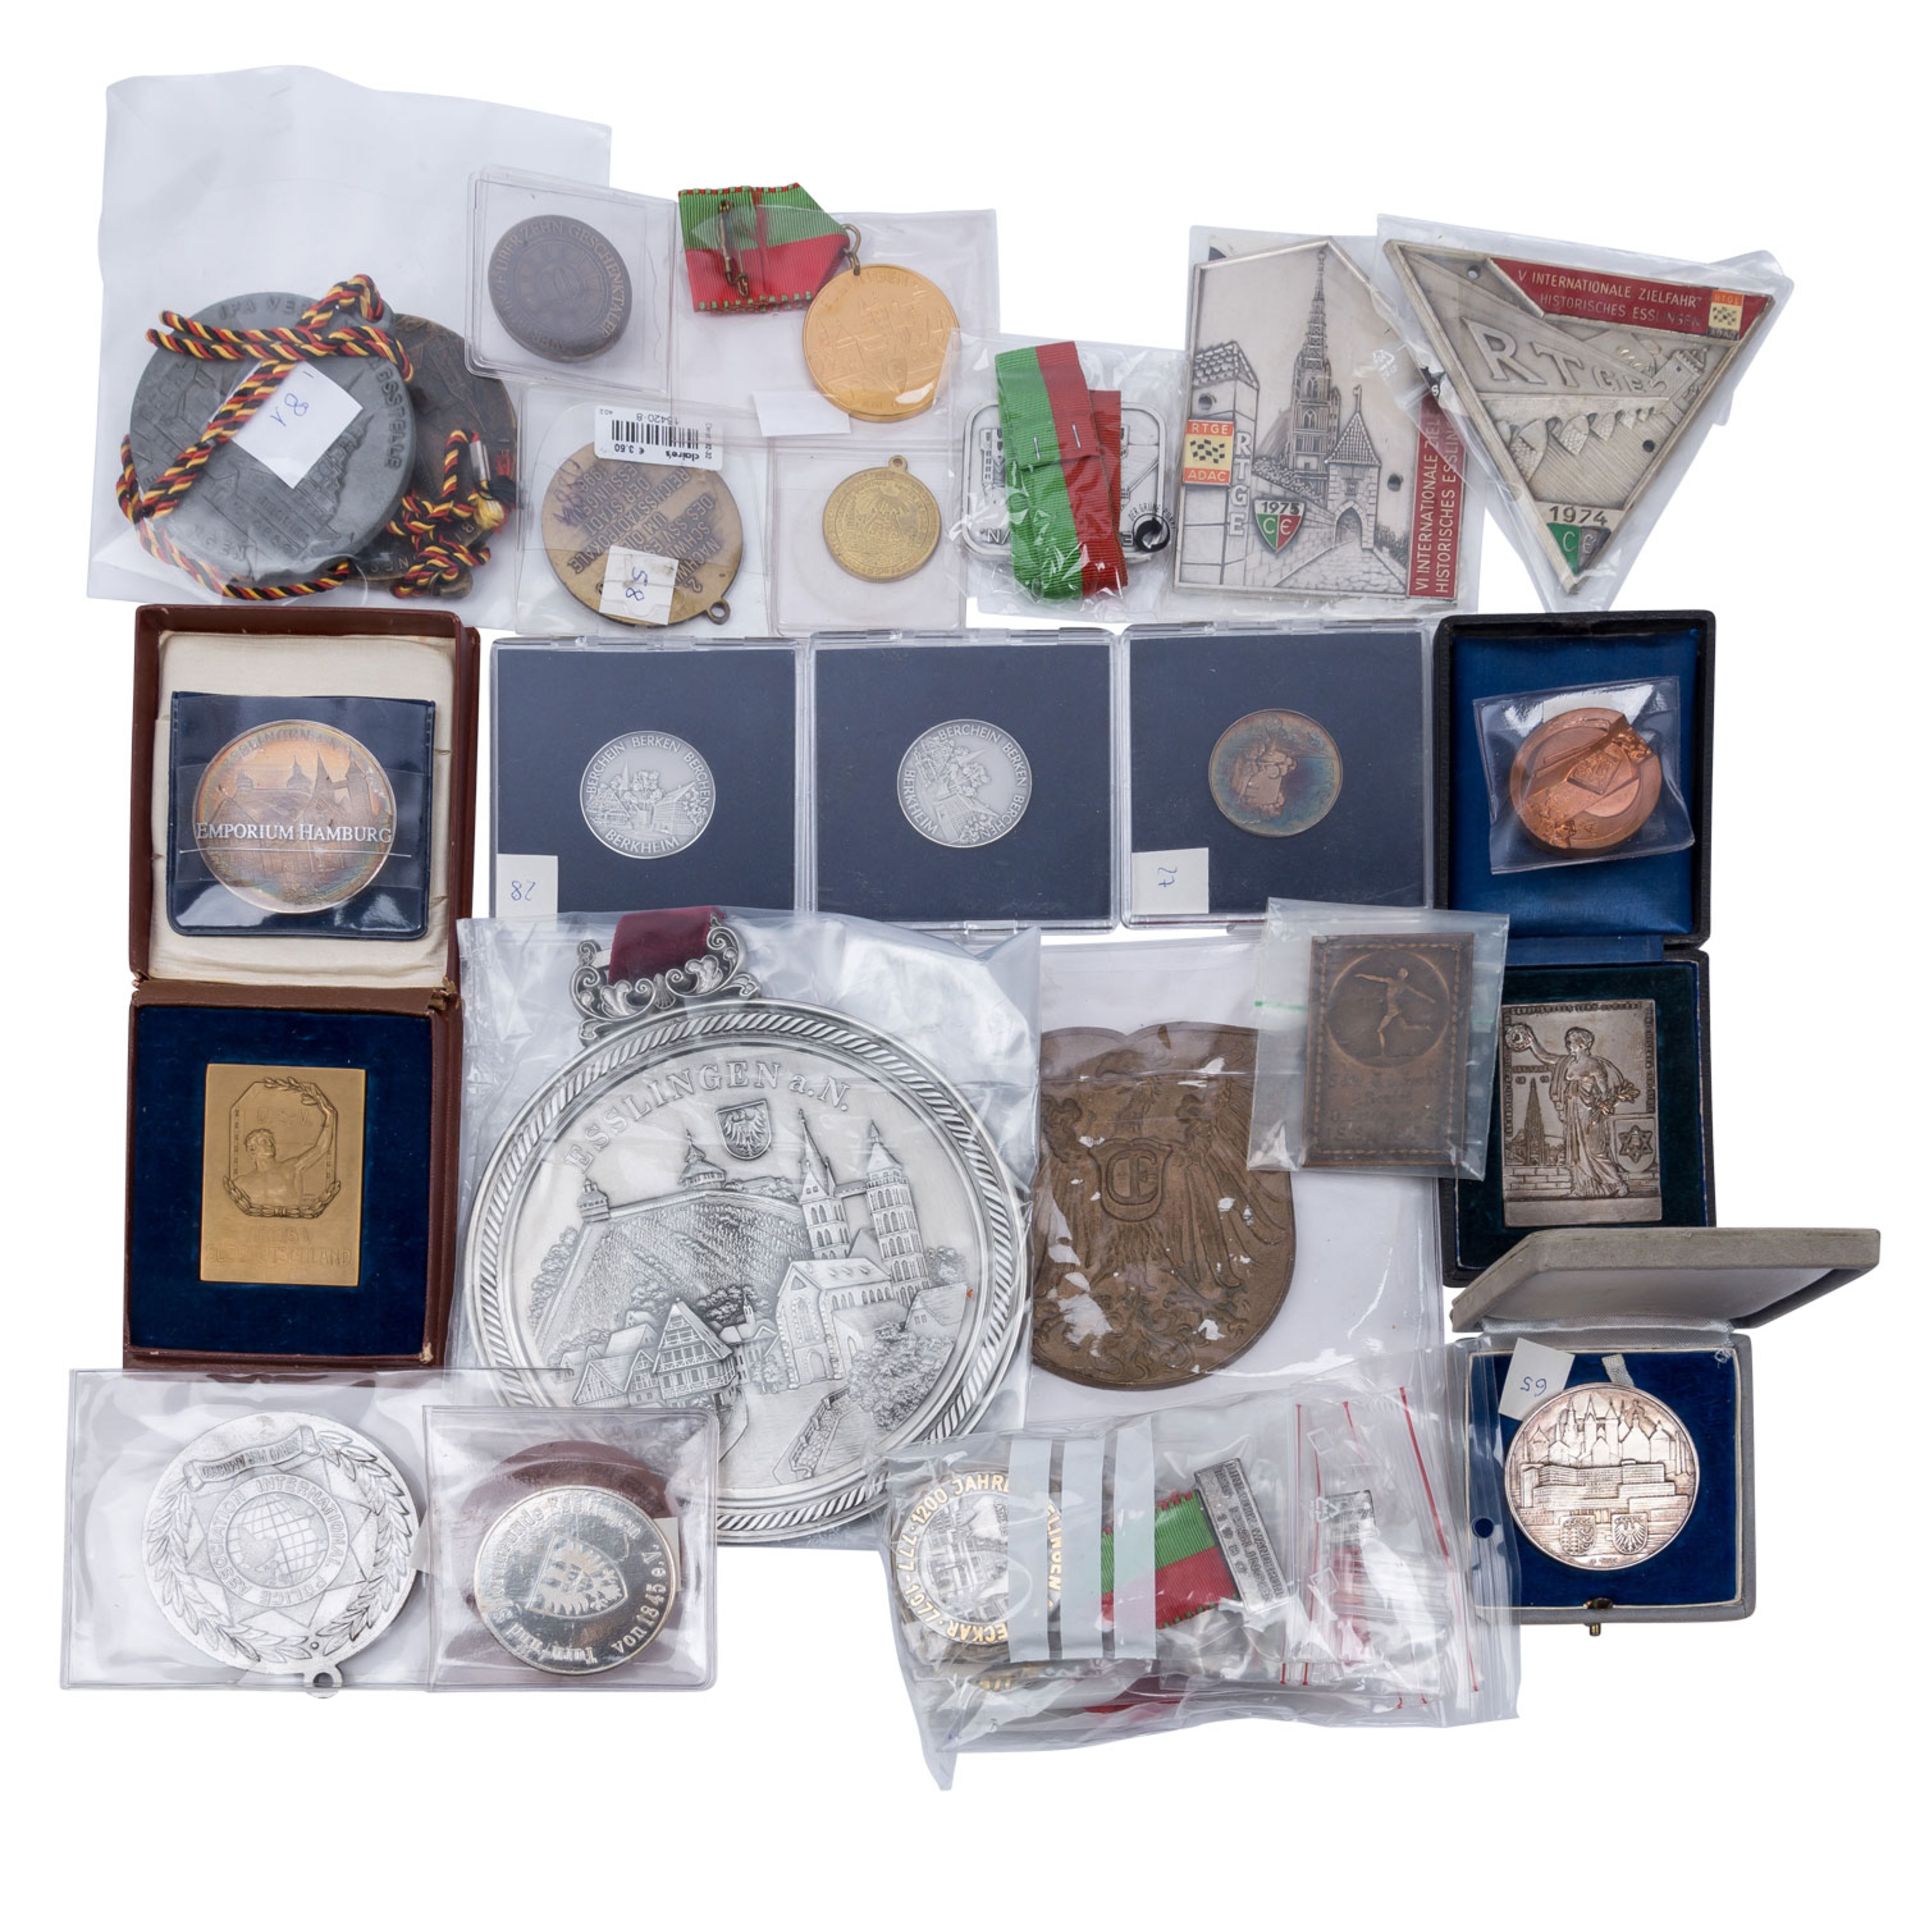 Esslingen - Spannende Großsammlung von Münzen, Medaillen, Plaketten und weiteres über die Stadtgesch - Image 7 of 7